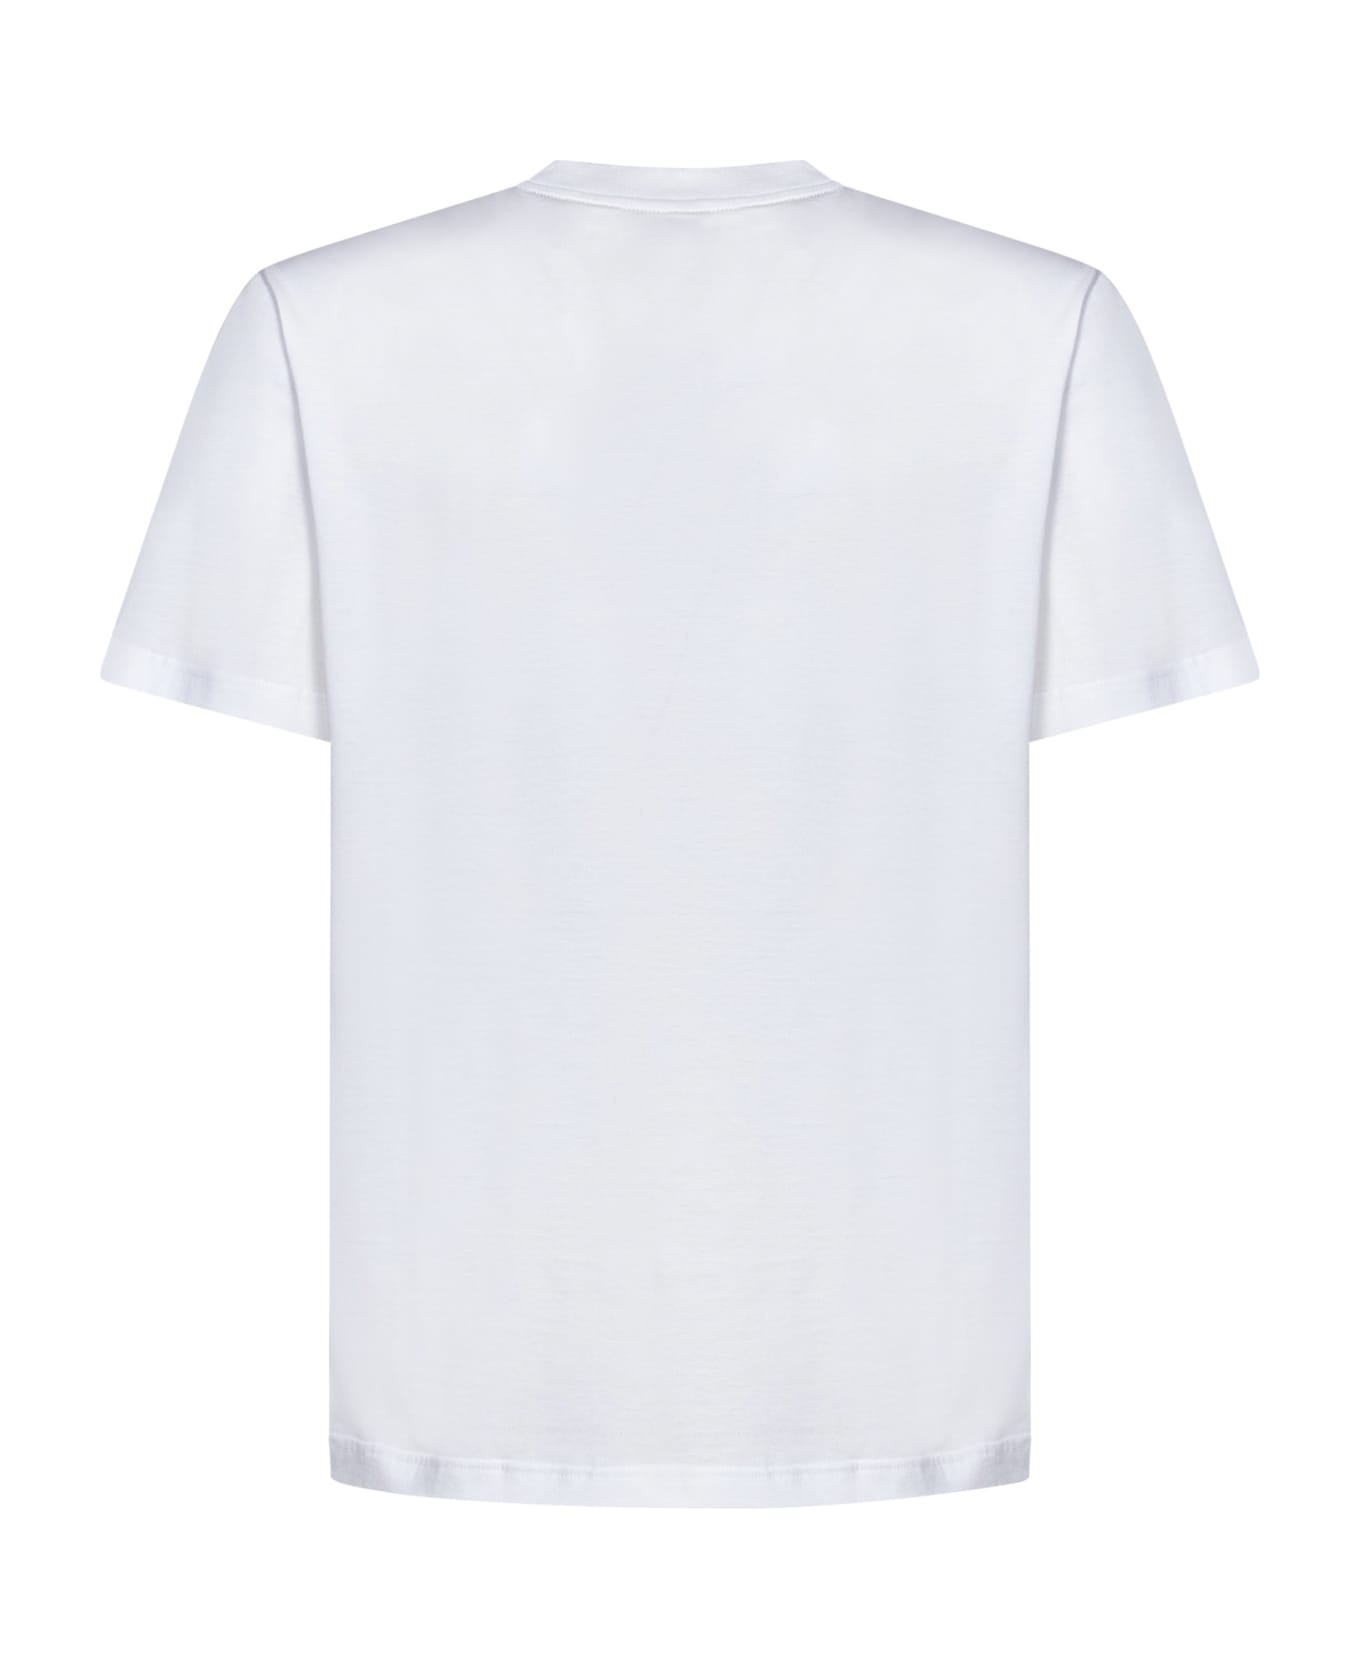 Brioni T-shirt - White シャツ